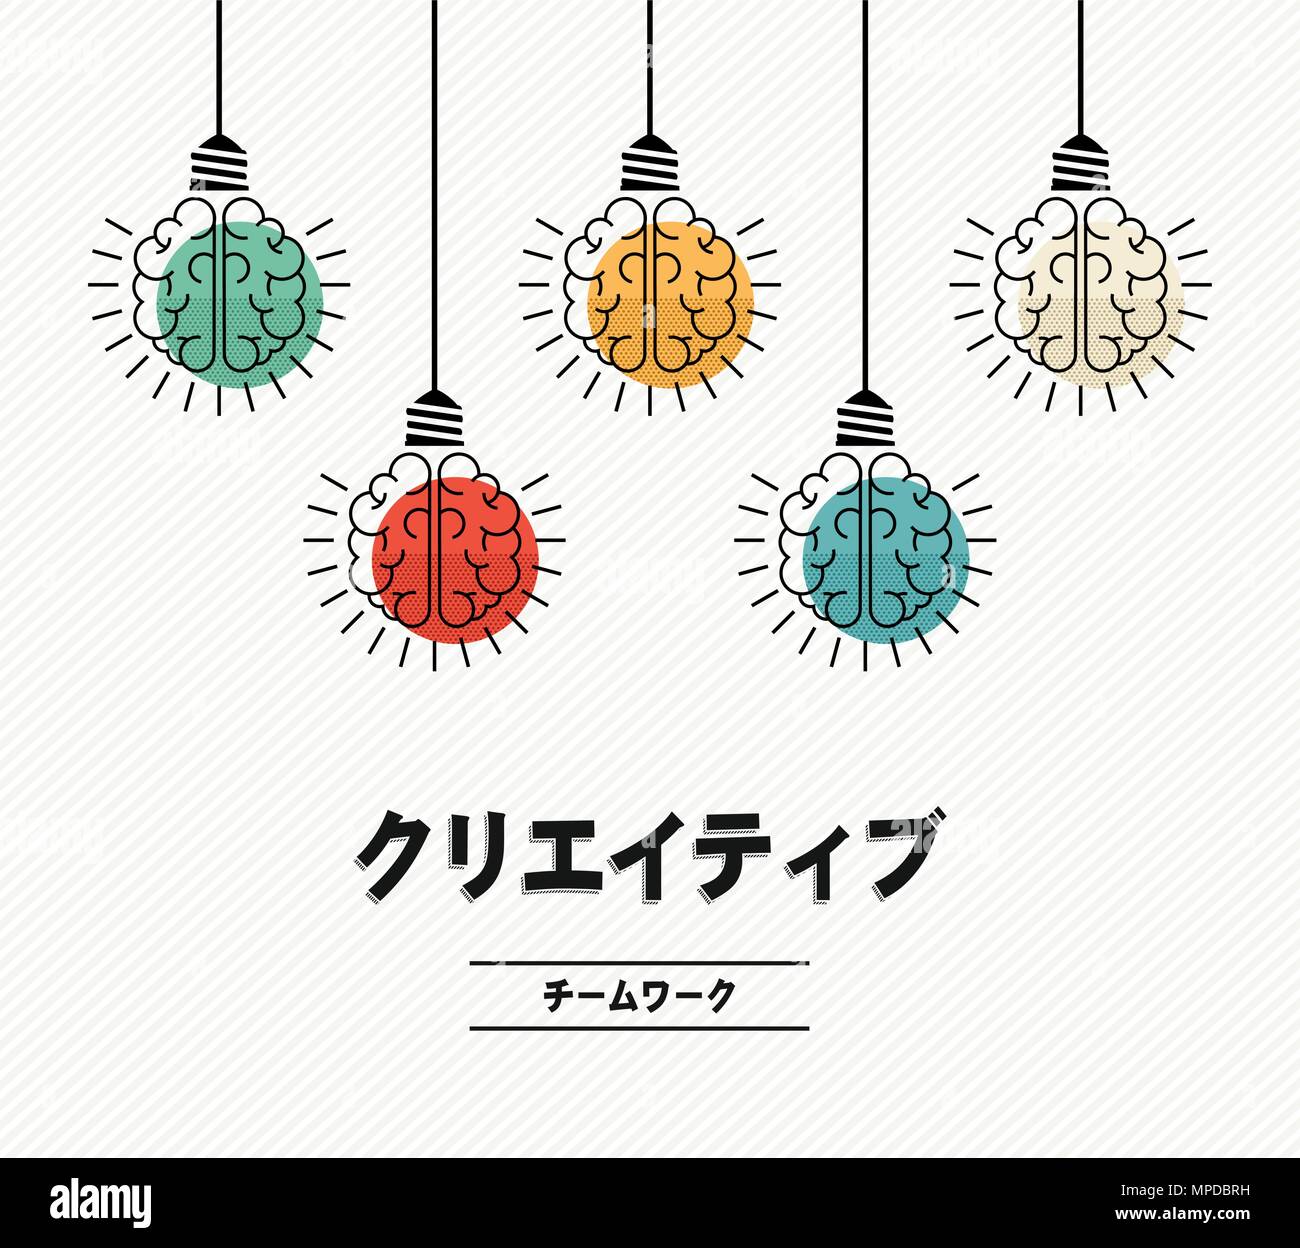 Lavoro di squadra creative design moderno in lingua giapponese con il cervello umano come colorata luce lampada, la creatività imprenditoriale concetto. EPS10 vettore. Illustrazione Vettoriale